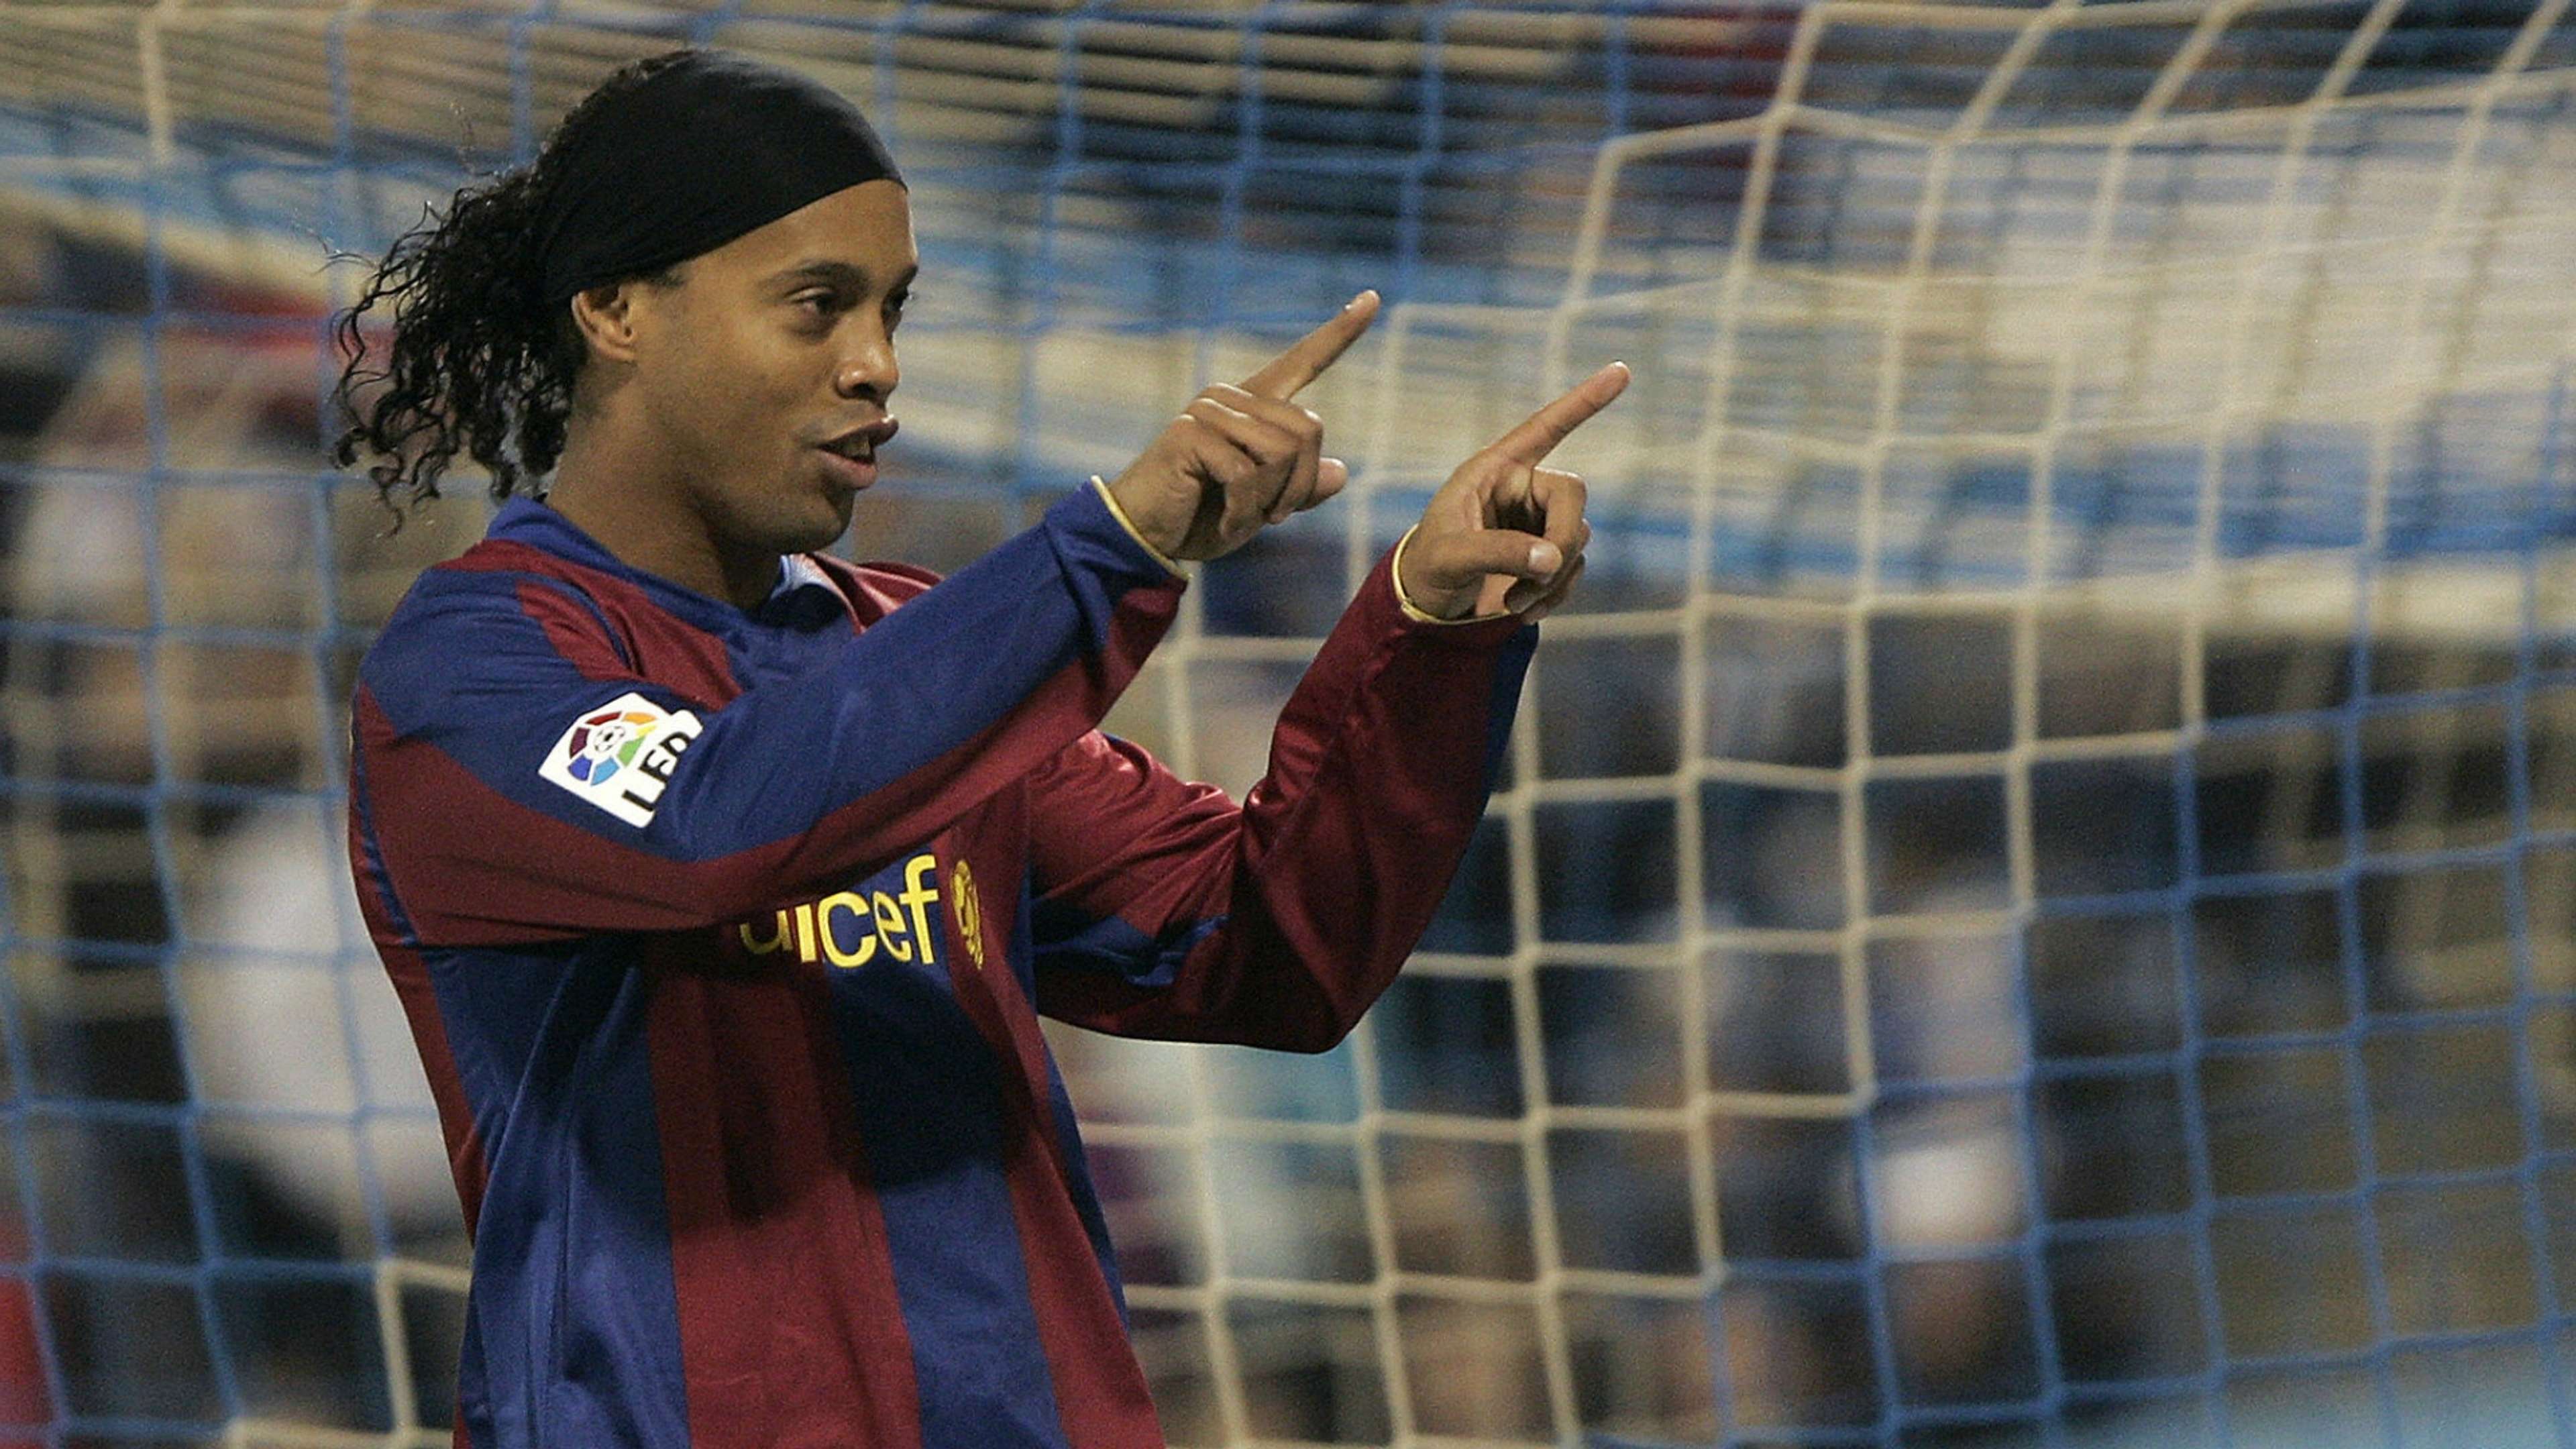 Ronaldinho - FC Barcelona